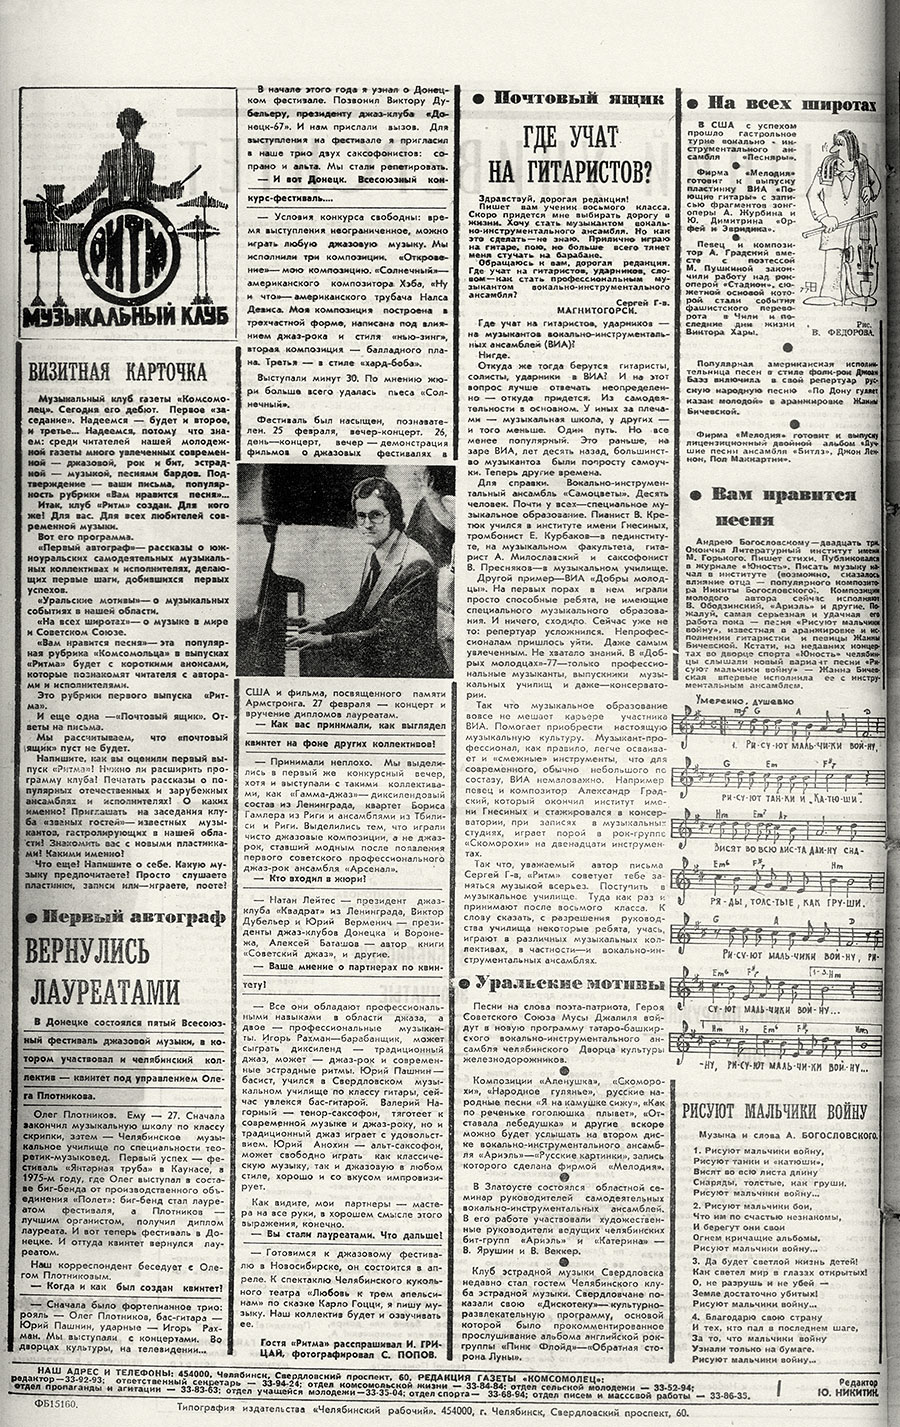 Заметка о Битлз без названия. Газета Комсомолец (Челябинск) от 26 марта 1977 года, стр. 4